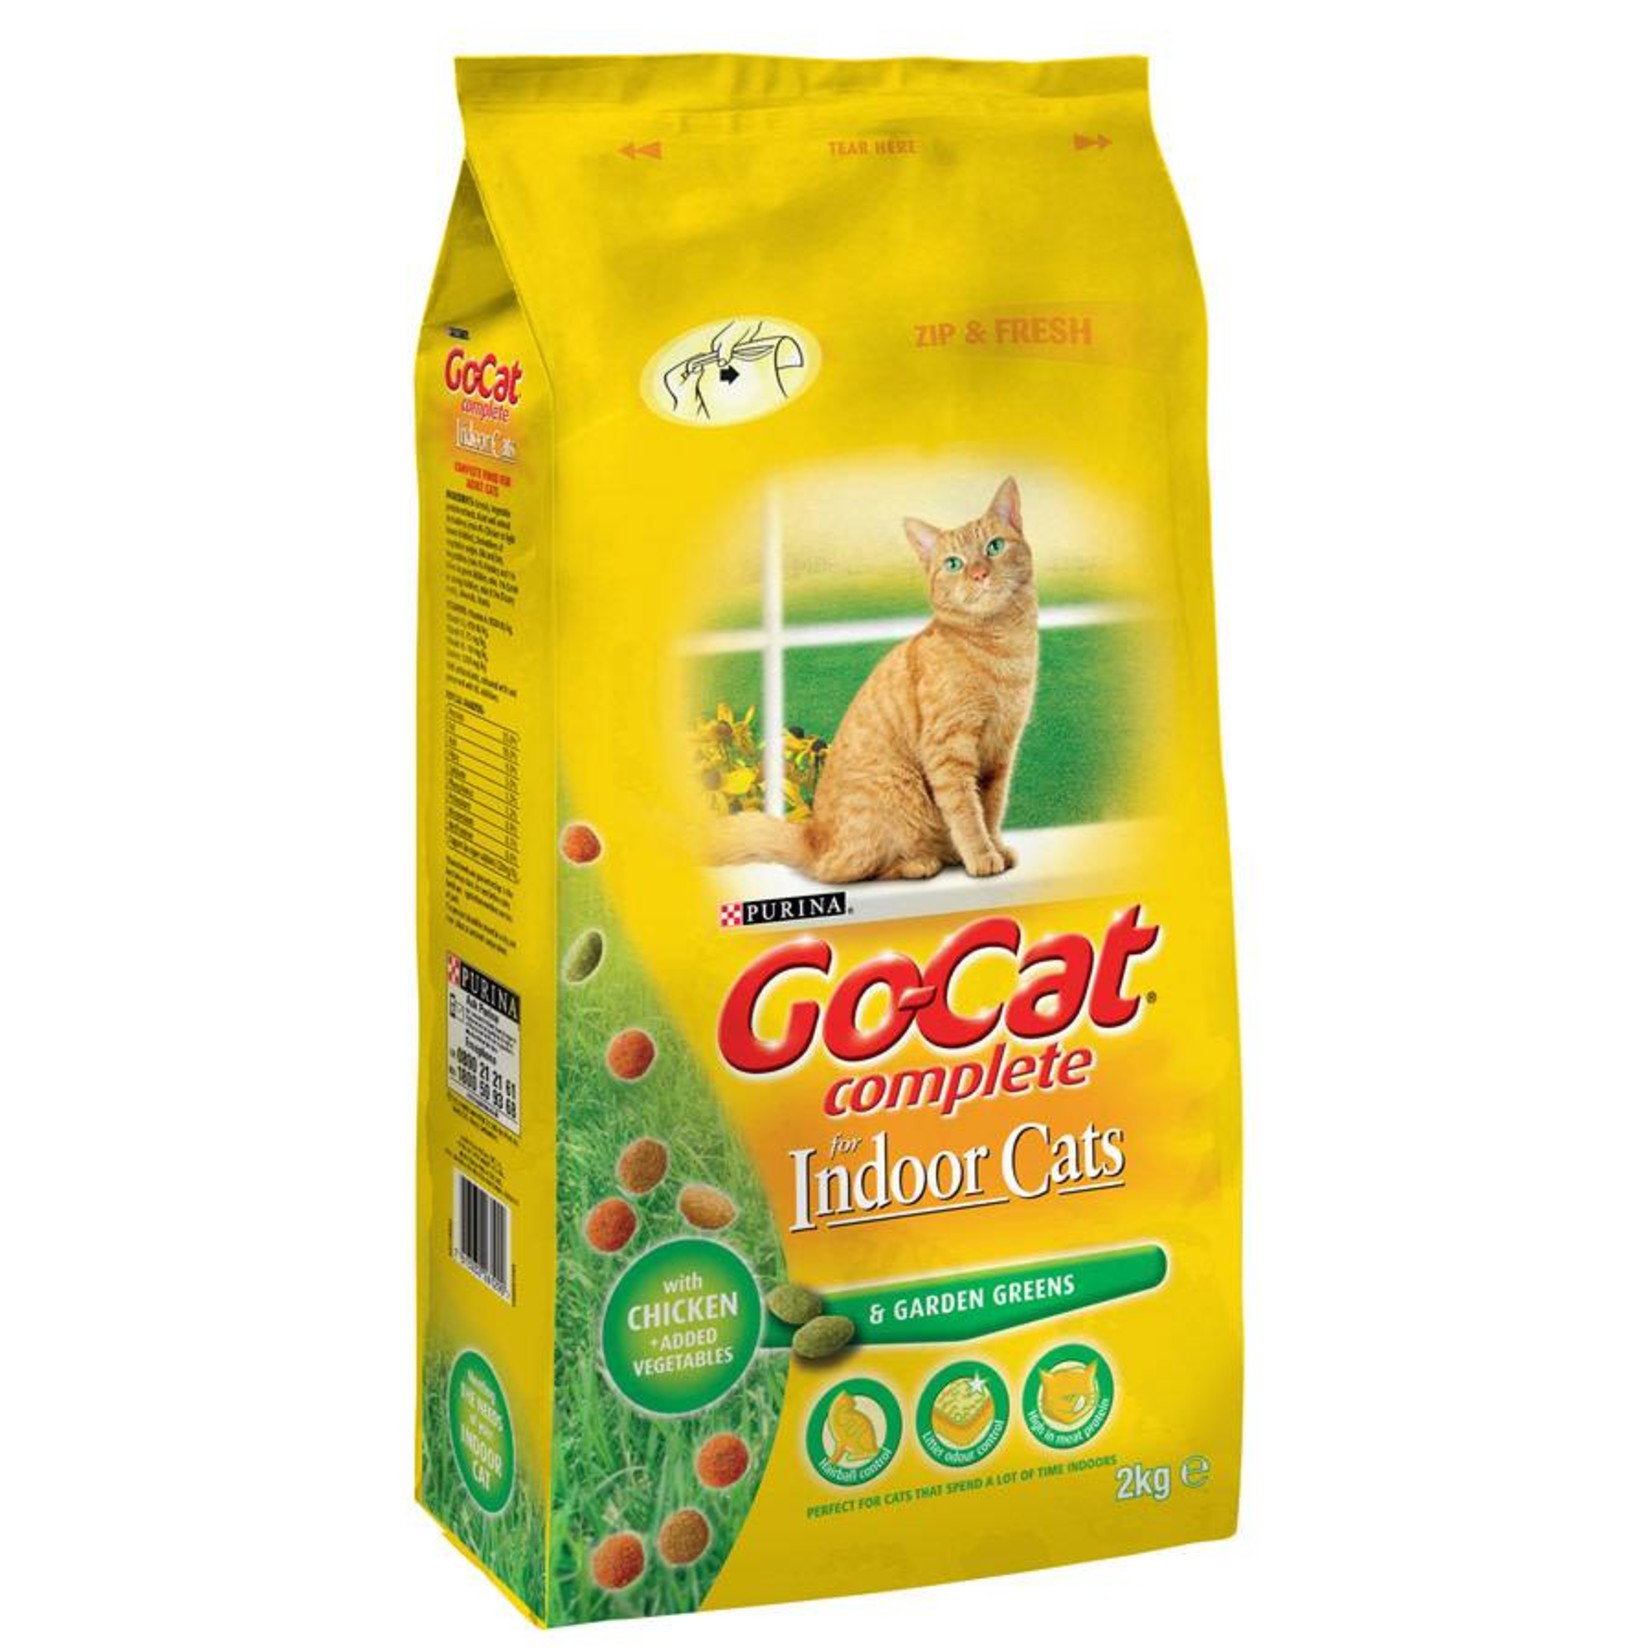 Go-Cat Complete Indoor Dry Cat Food, Chicken with Garden Greens, 2kg